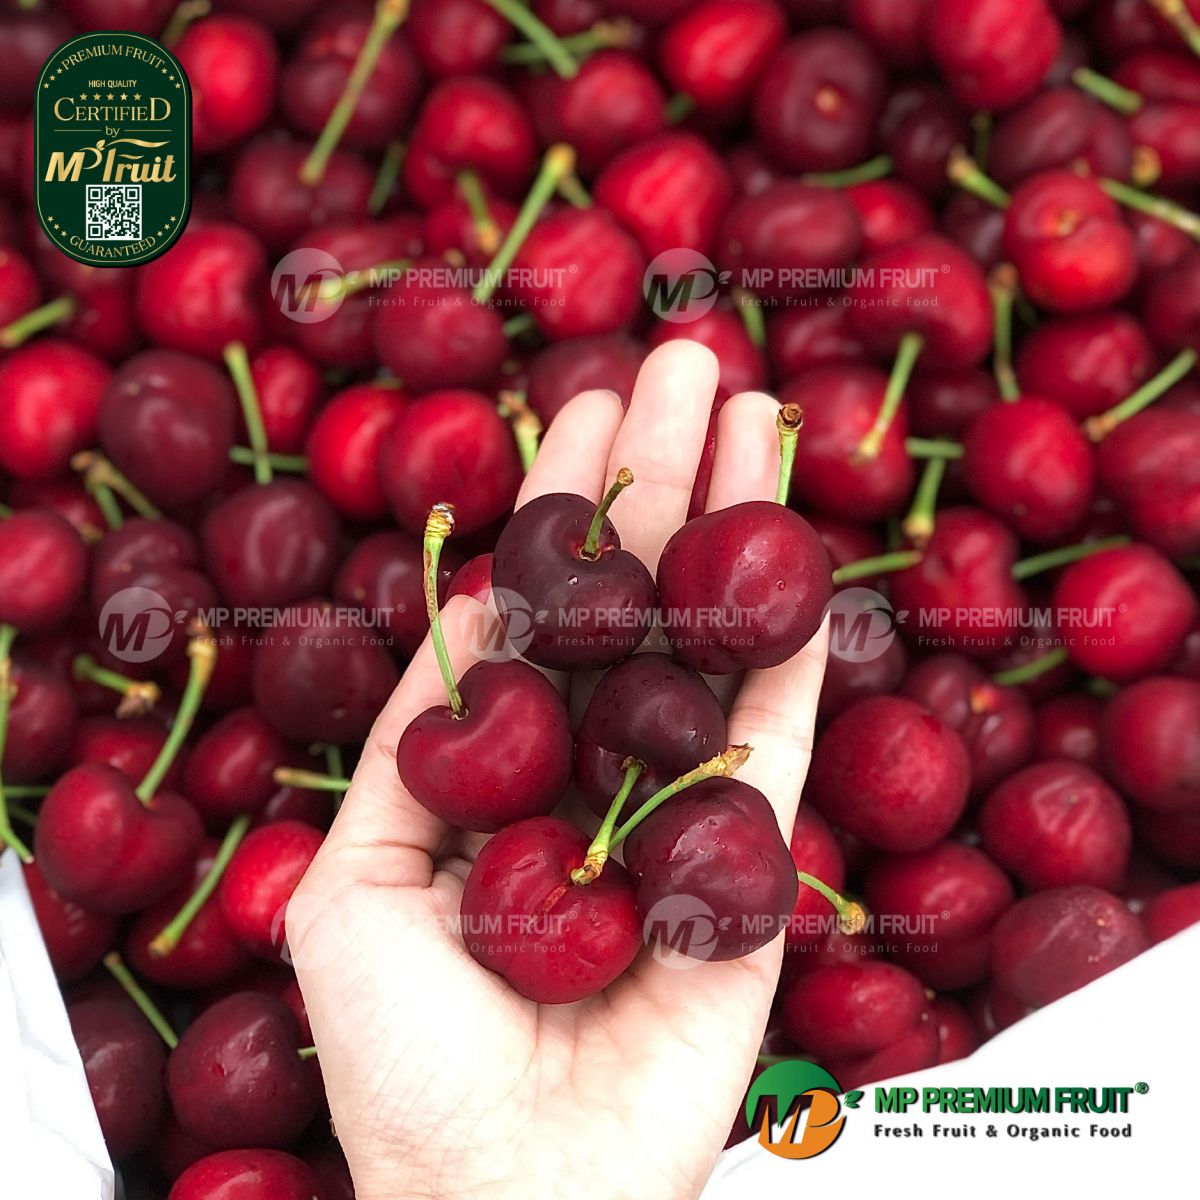 Cherry Đỏ Mỹ Size 9.5 tại MP Fruit